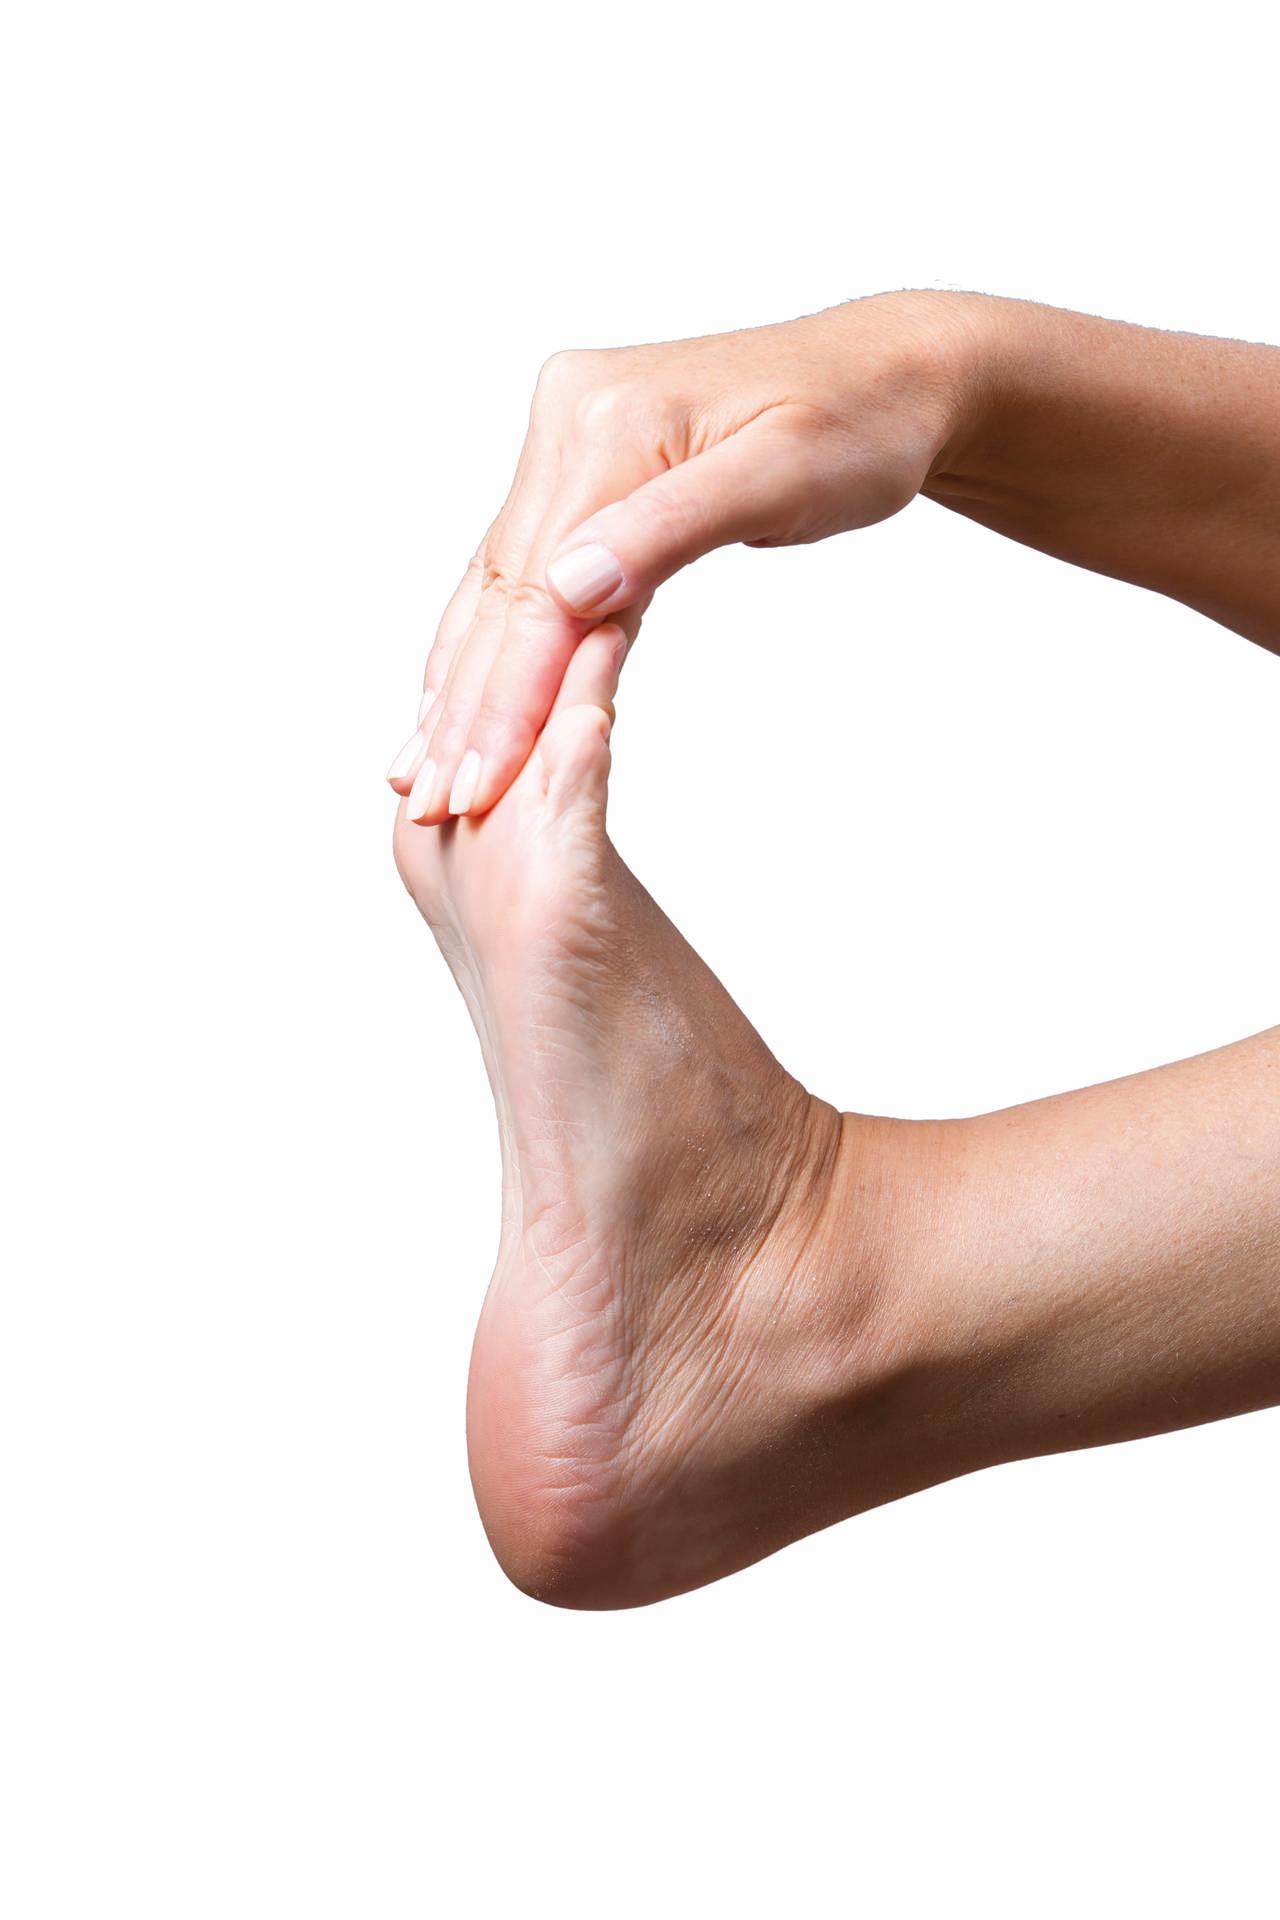 Schmerzen im fuß. Massage weiblicher Füße auf grauem Hintergrund